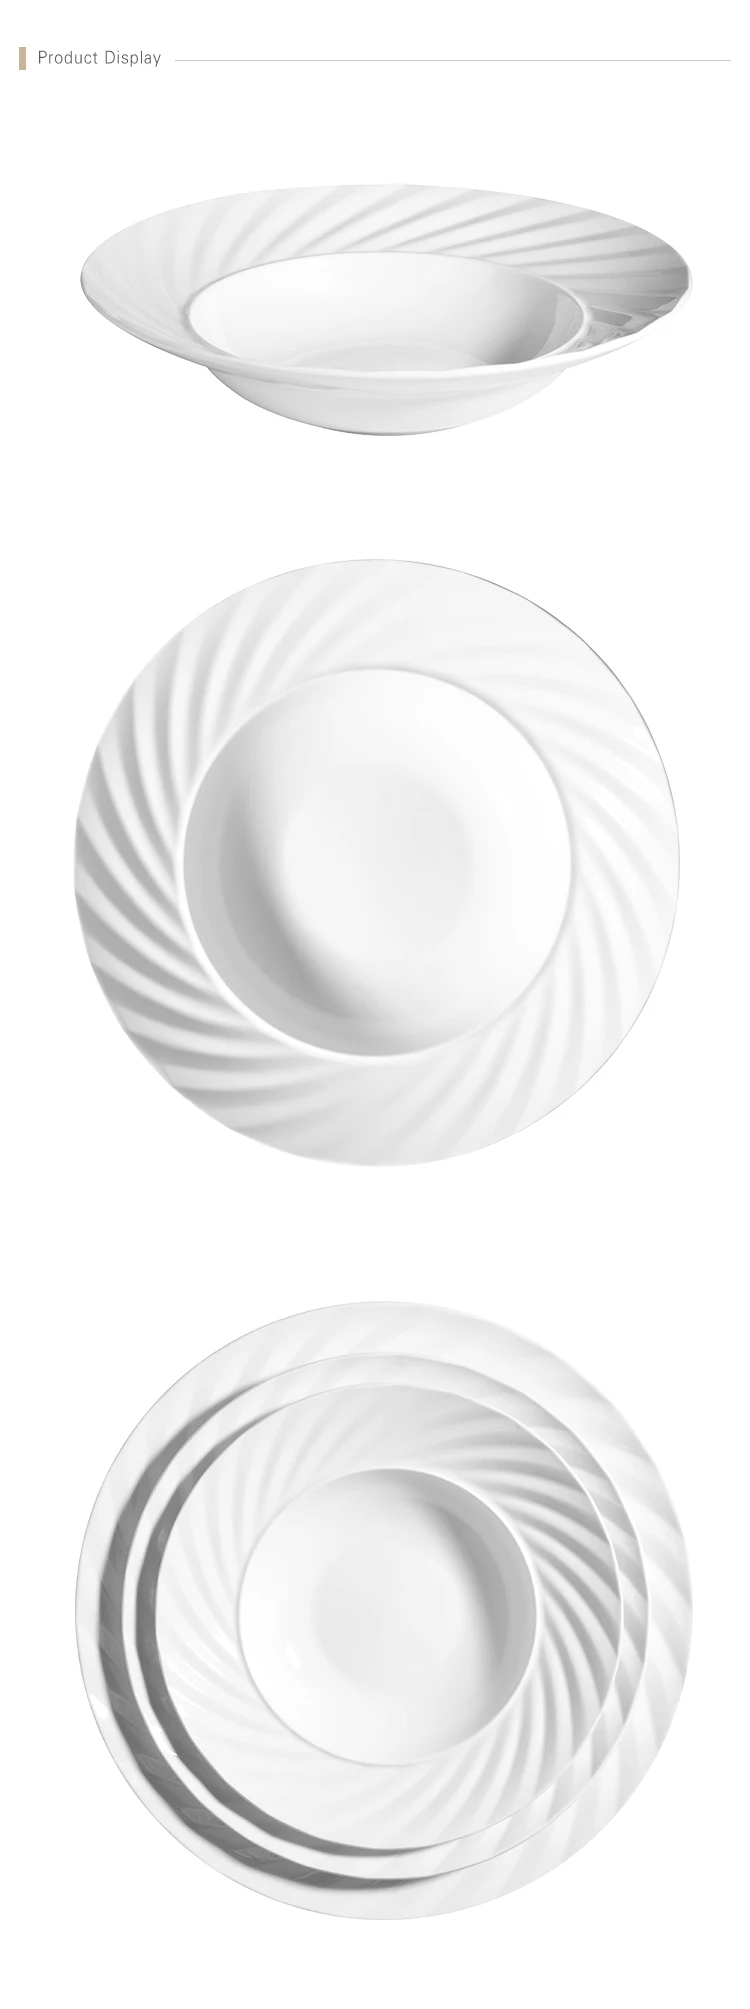 Wholesale Ceramic 8.75 Soup Logo Plate Porcelain Hot Sale Salad Event Plate